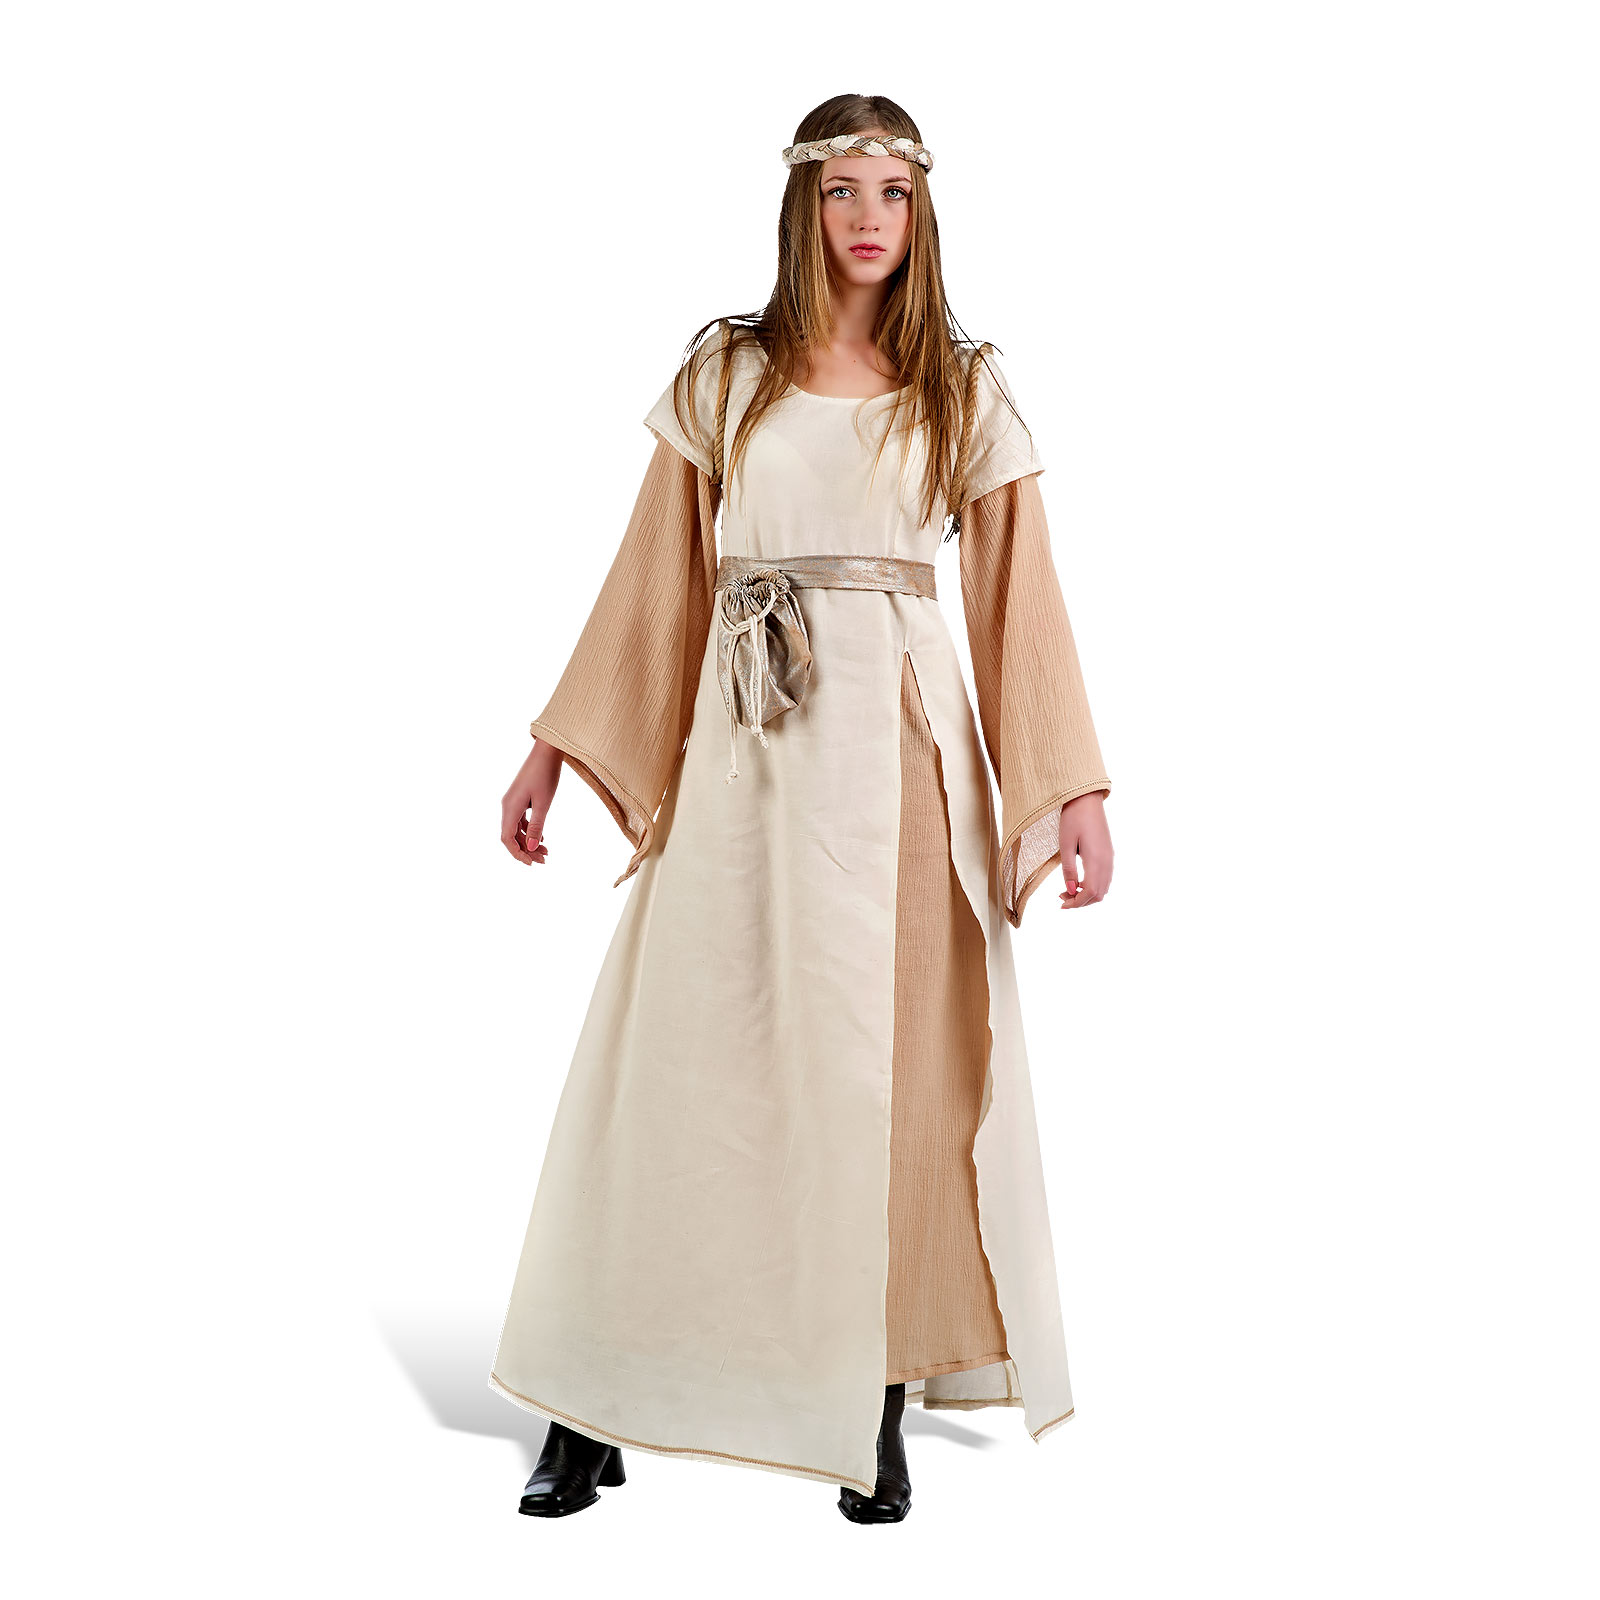 Middeleeuwse Dame - Kostuum